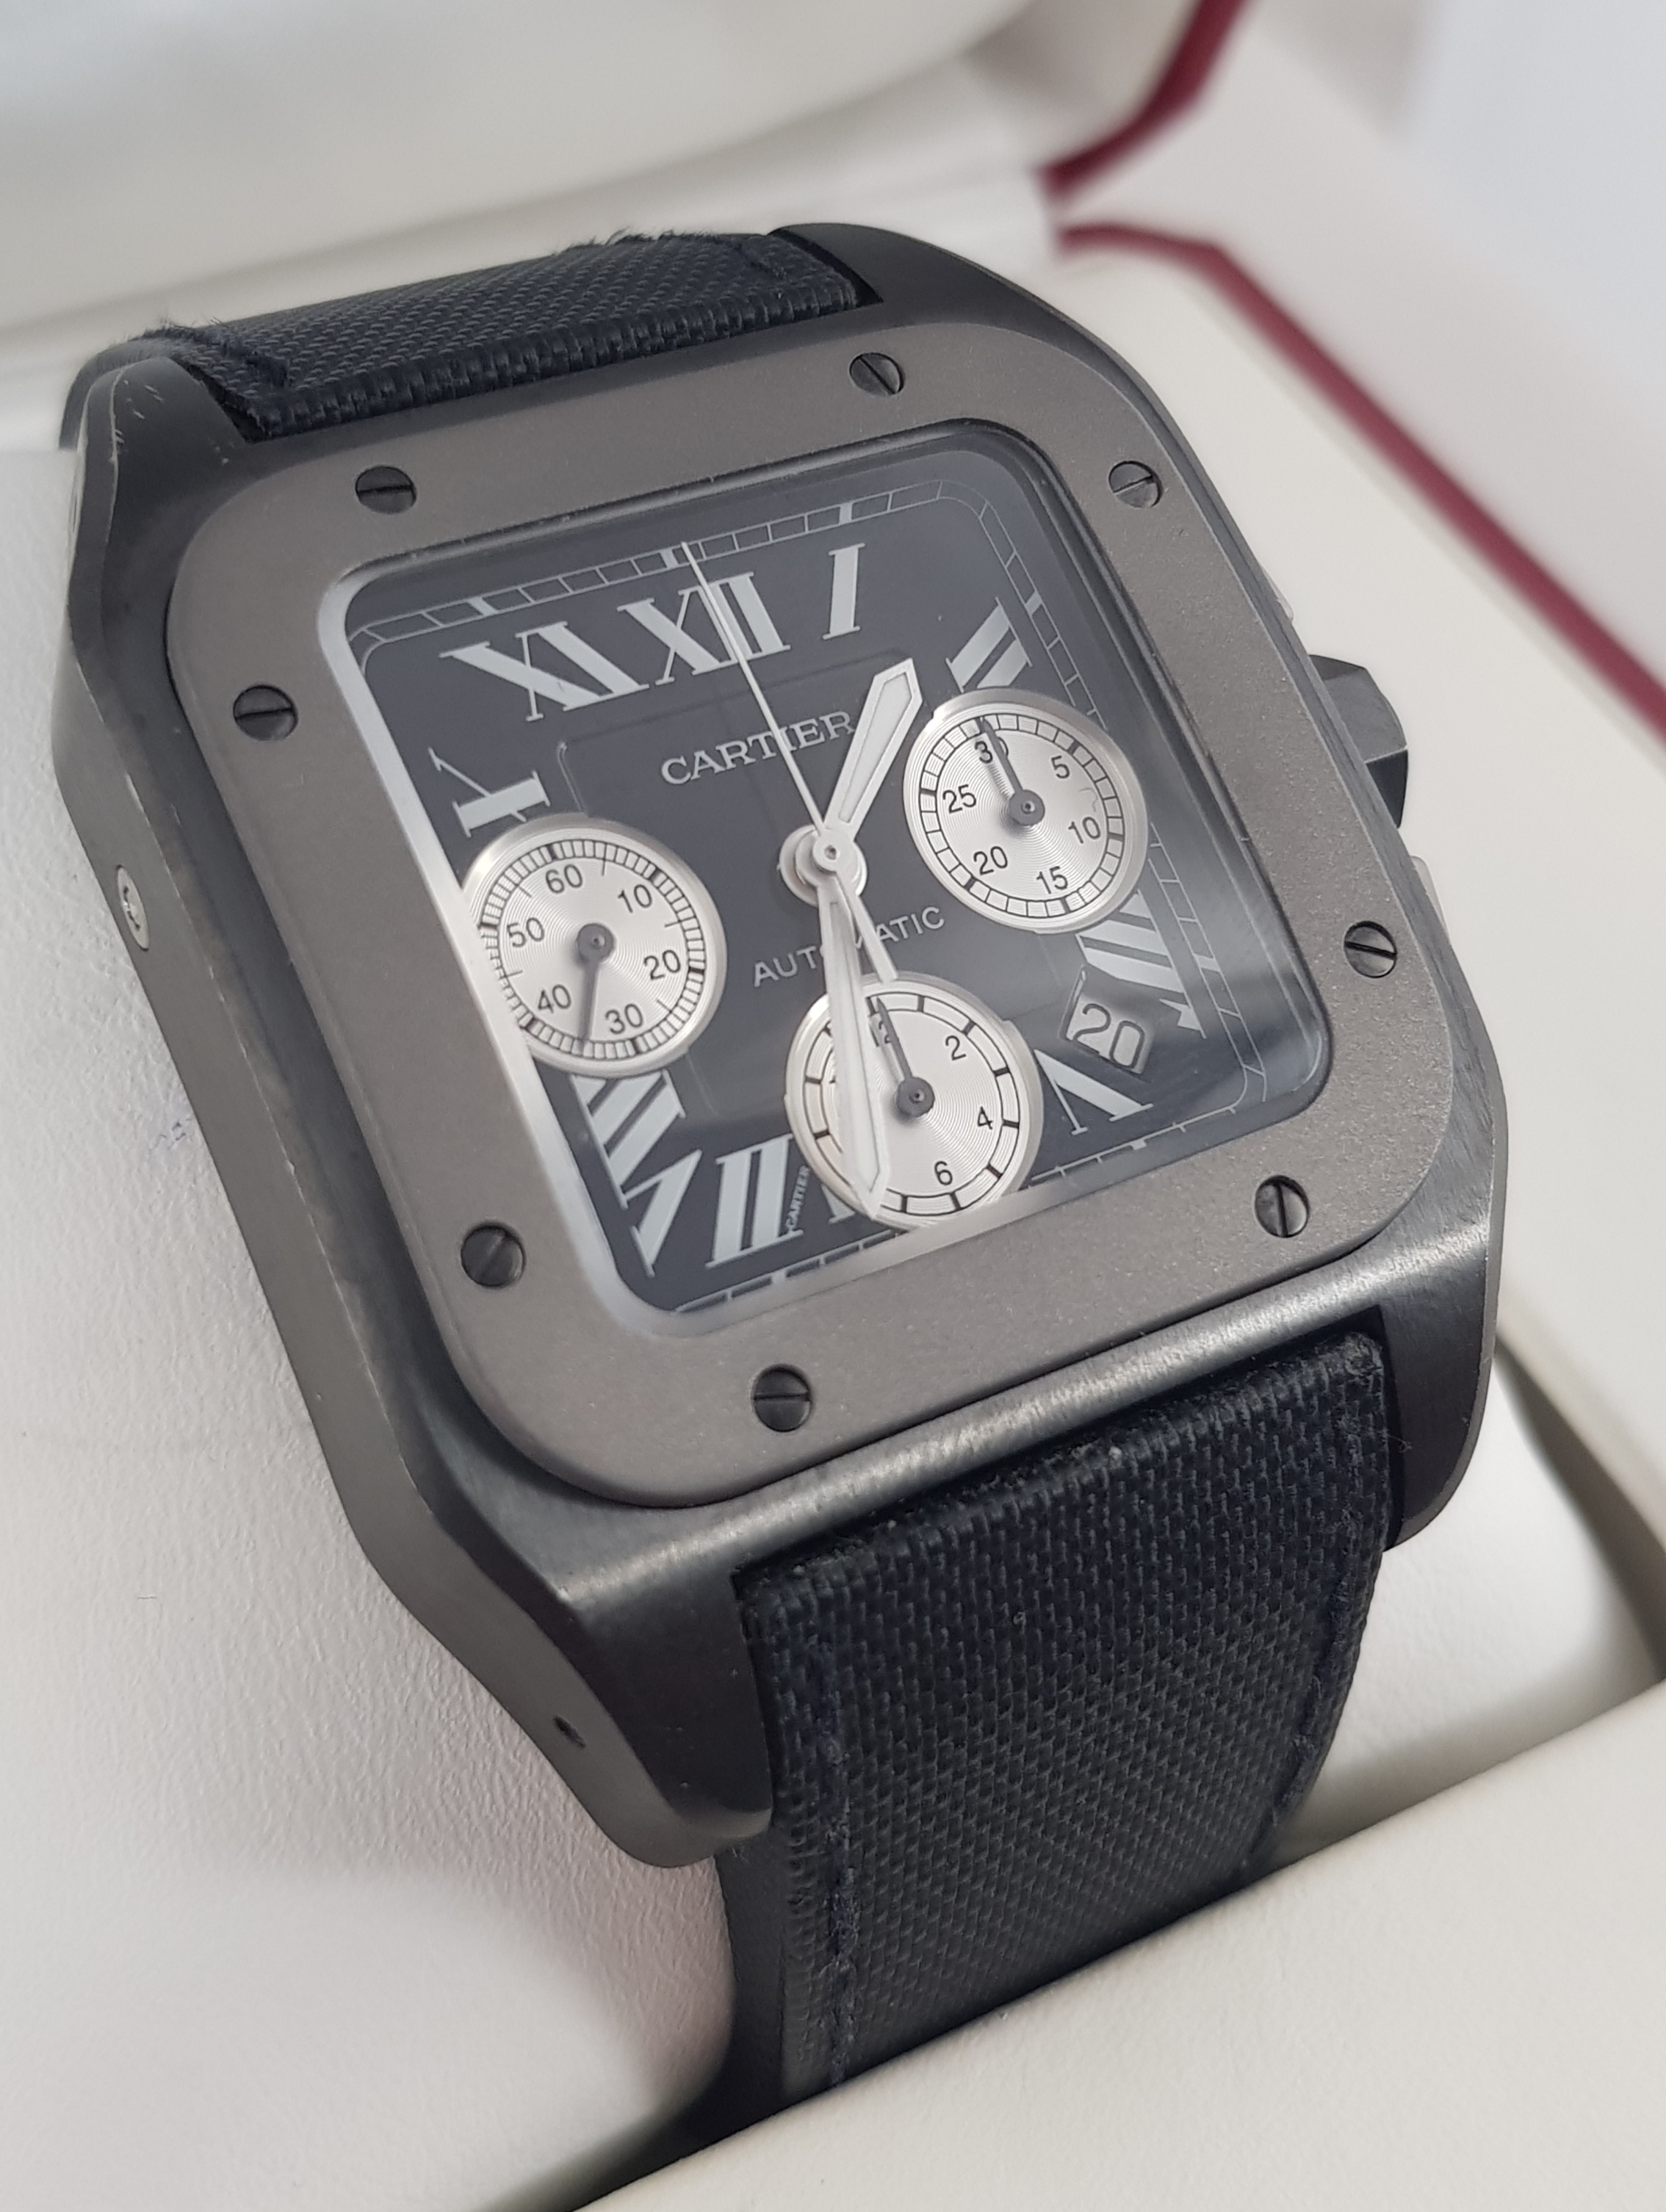 Часы Cartier Santos De 100 Chronograph W2020005